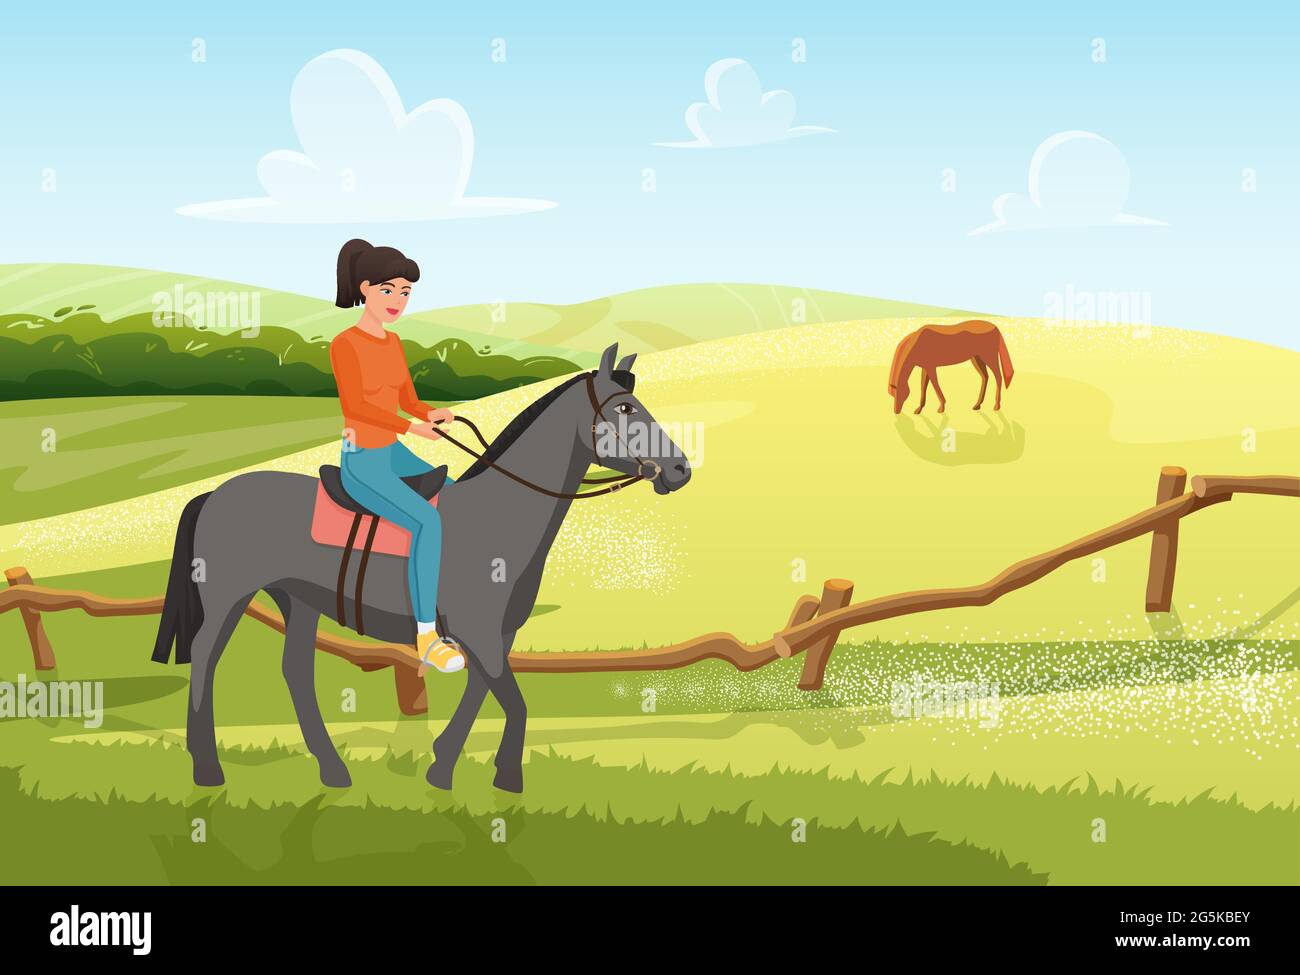 Menschen reiten Pferd im Sommer ländliche Ranch Landschaft Vektor Illustration. Cartoon junge Frau Jockey Reiter Charakter Reiten Pferd Haustier auf grünen Bauernhof Feld, Reiten Sommer Hintergrund Stock Vektor